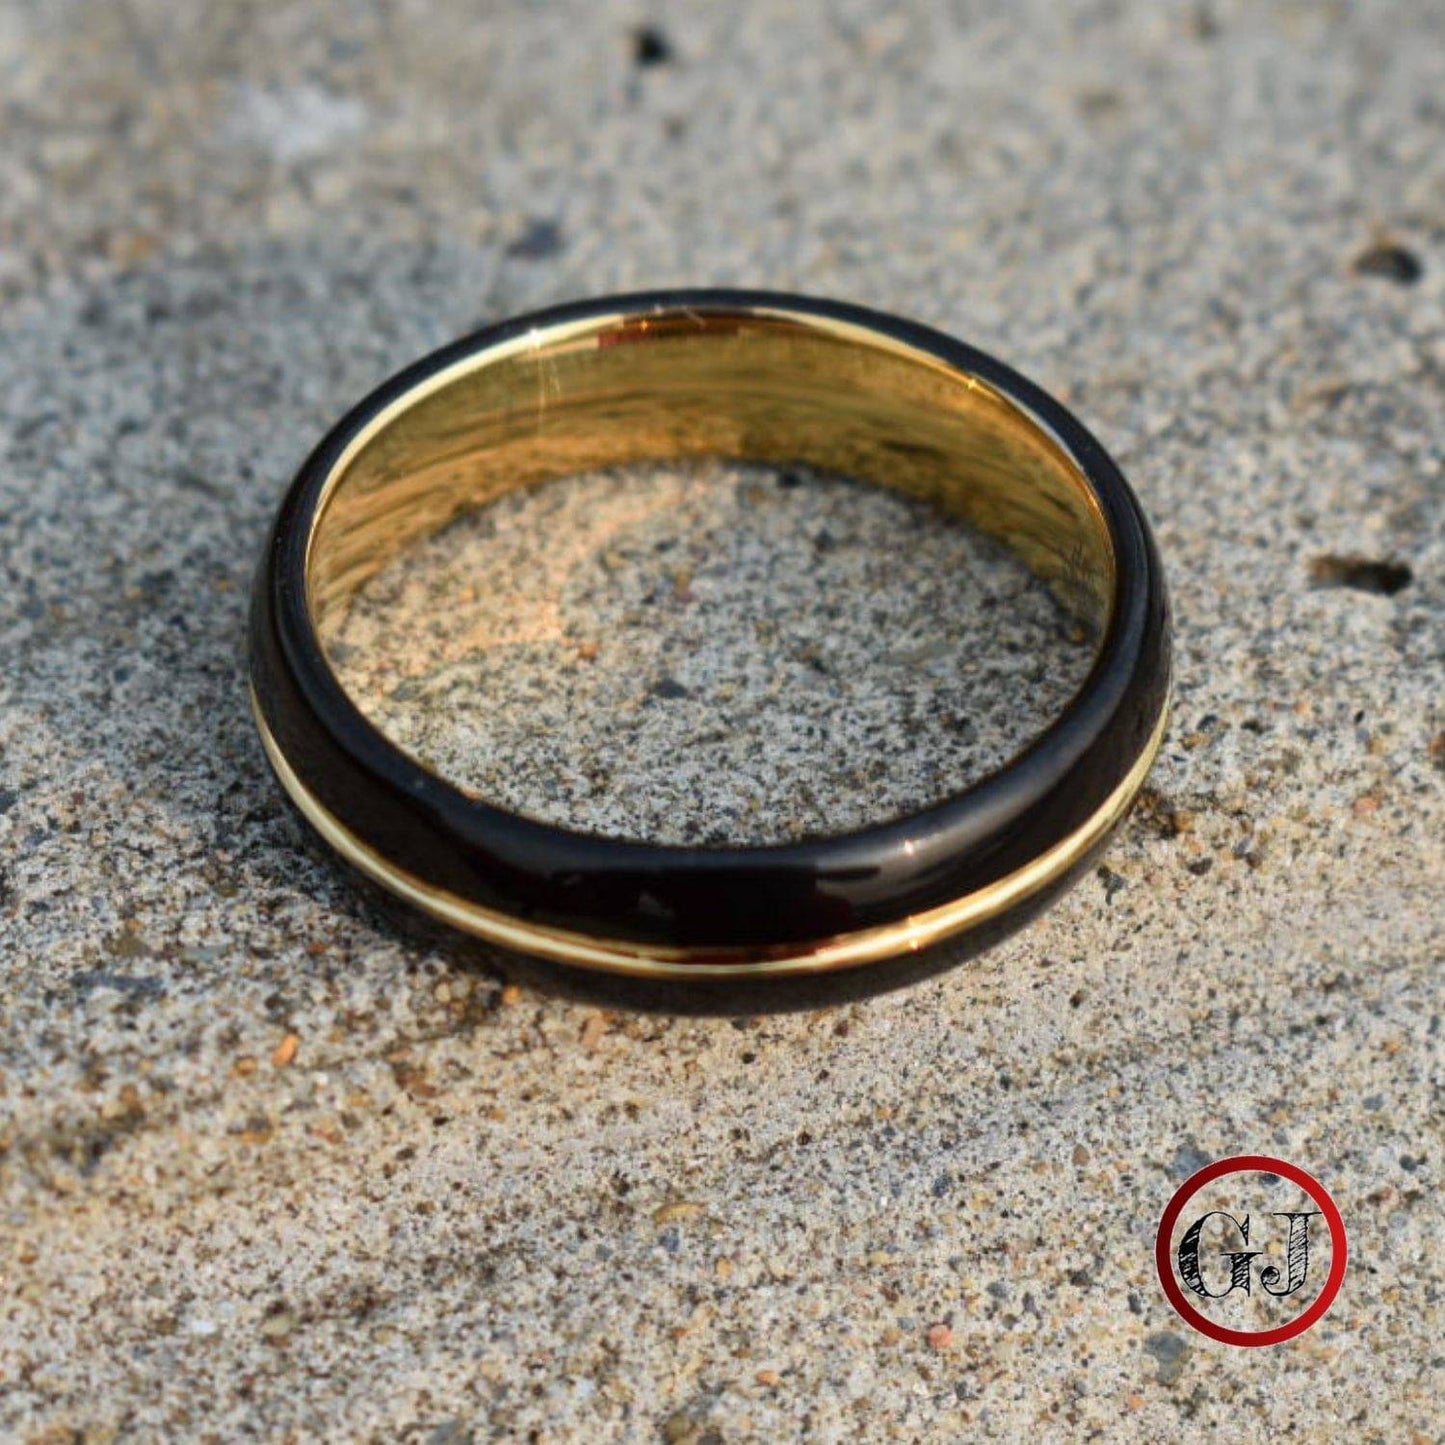 Tungsten 6mm Ring Black with Gold Center Stripe - Tungsten Titans